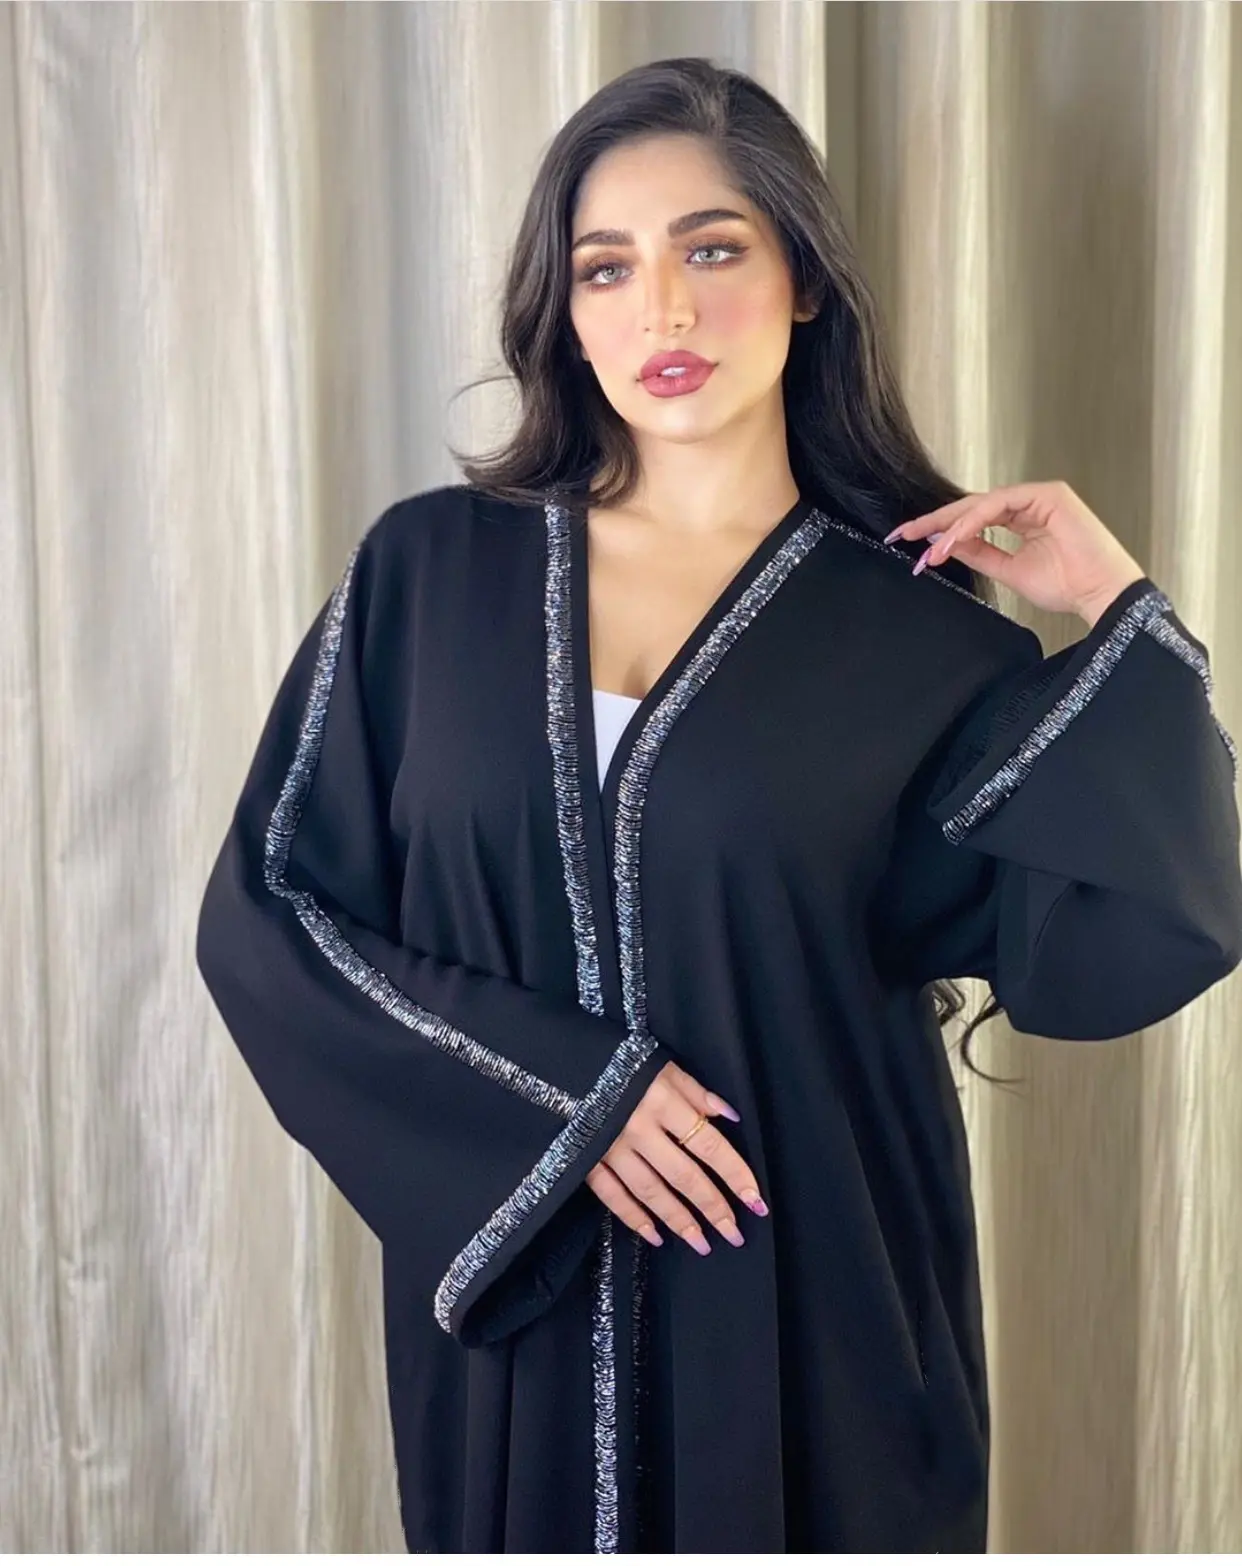 FURUI 블랙 오픈 Abaya 드레스 이슬람 여성 이슬람 의류 공급 Abaya 쉬머 여성